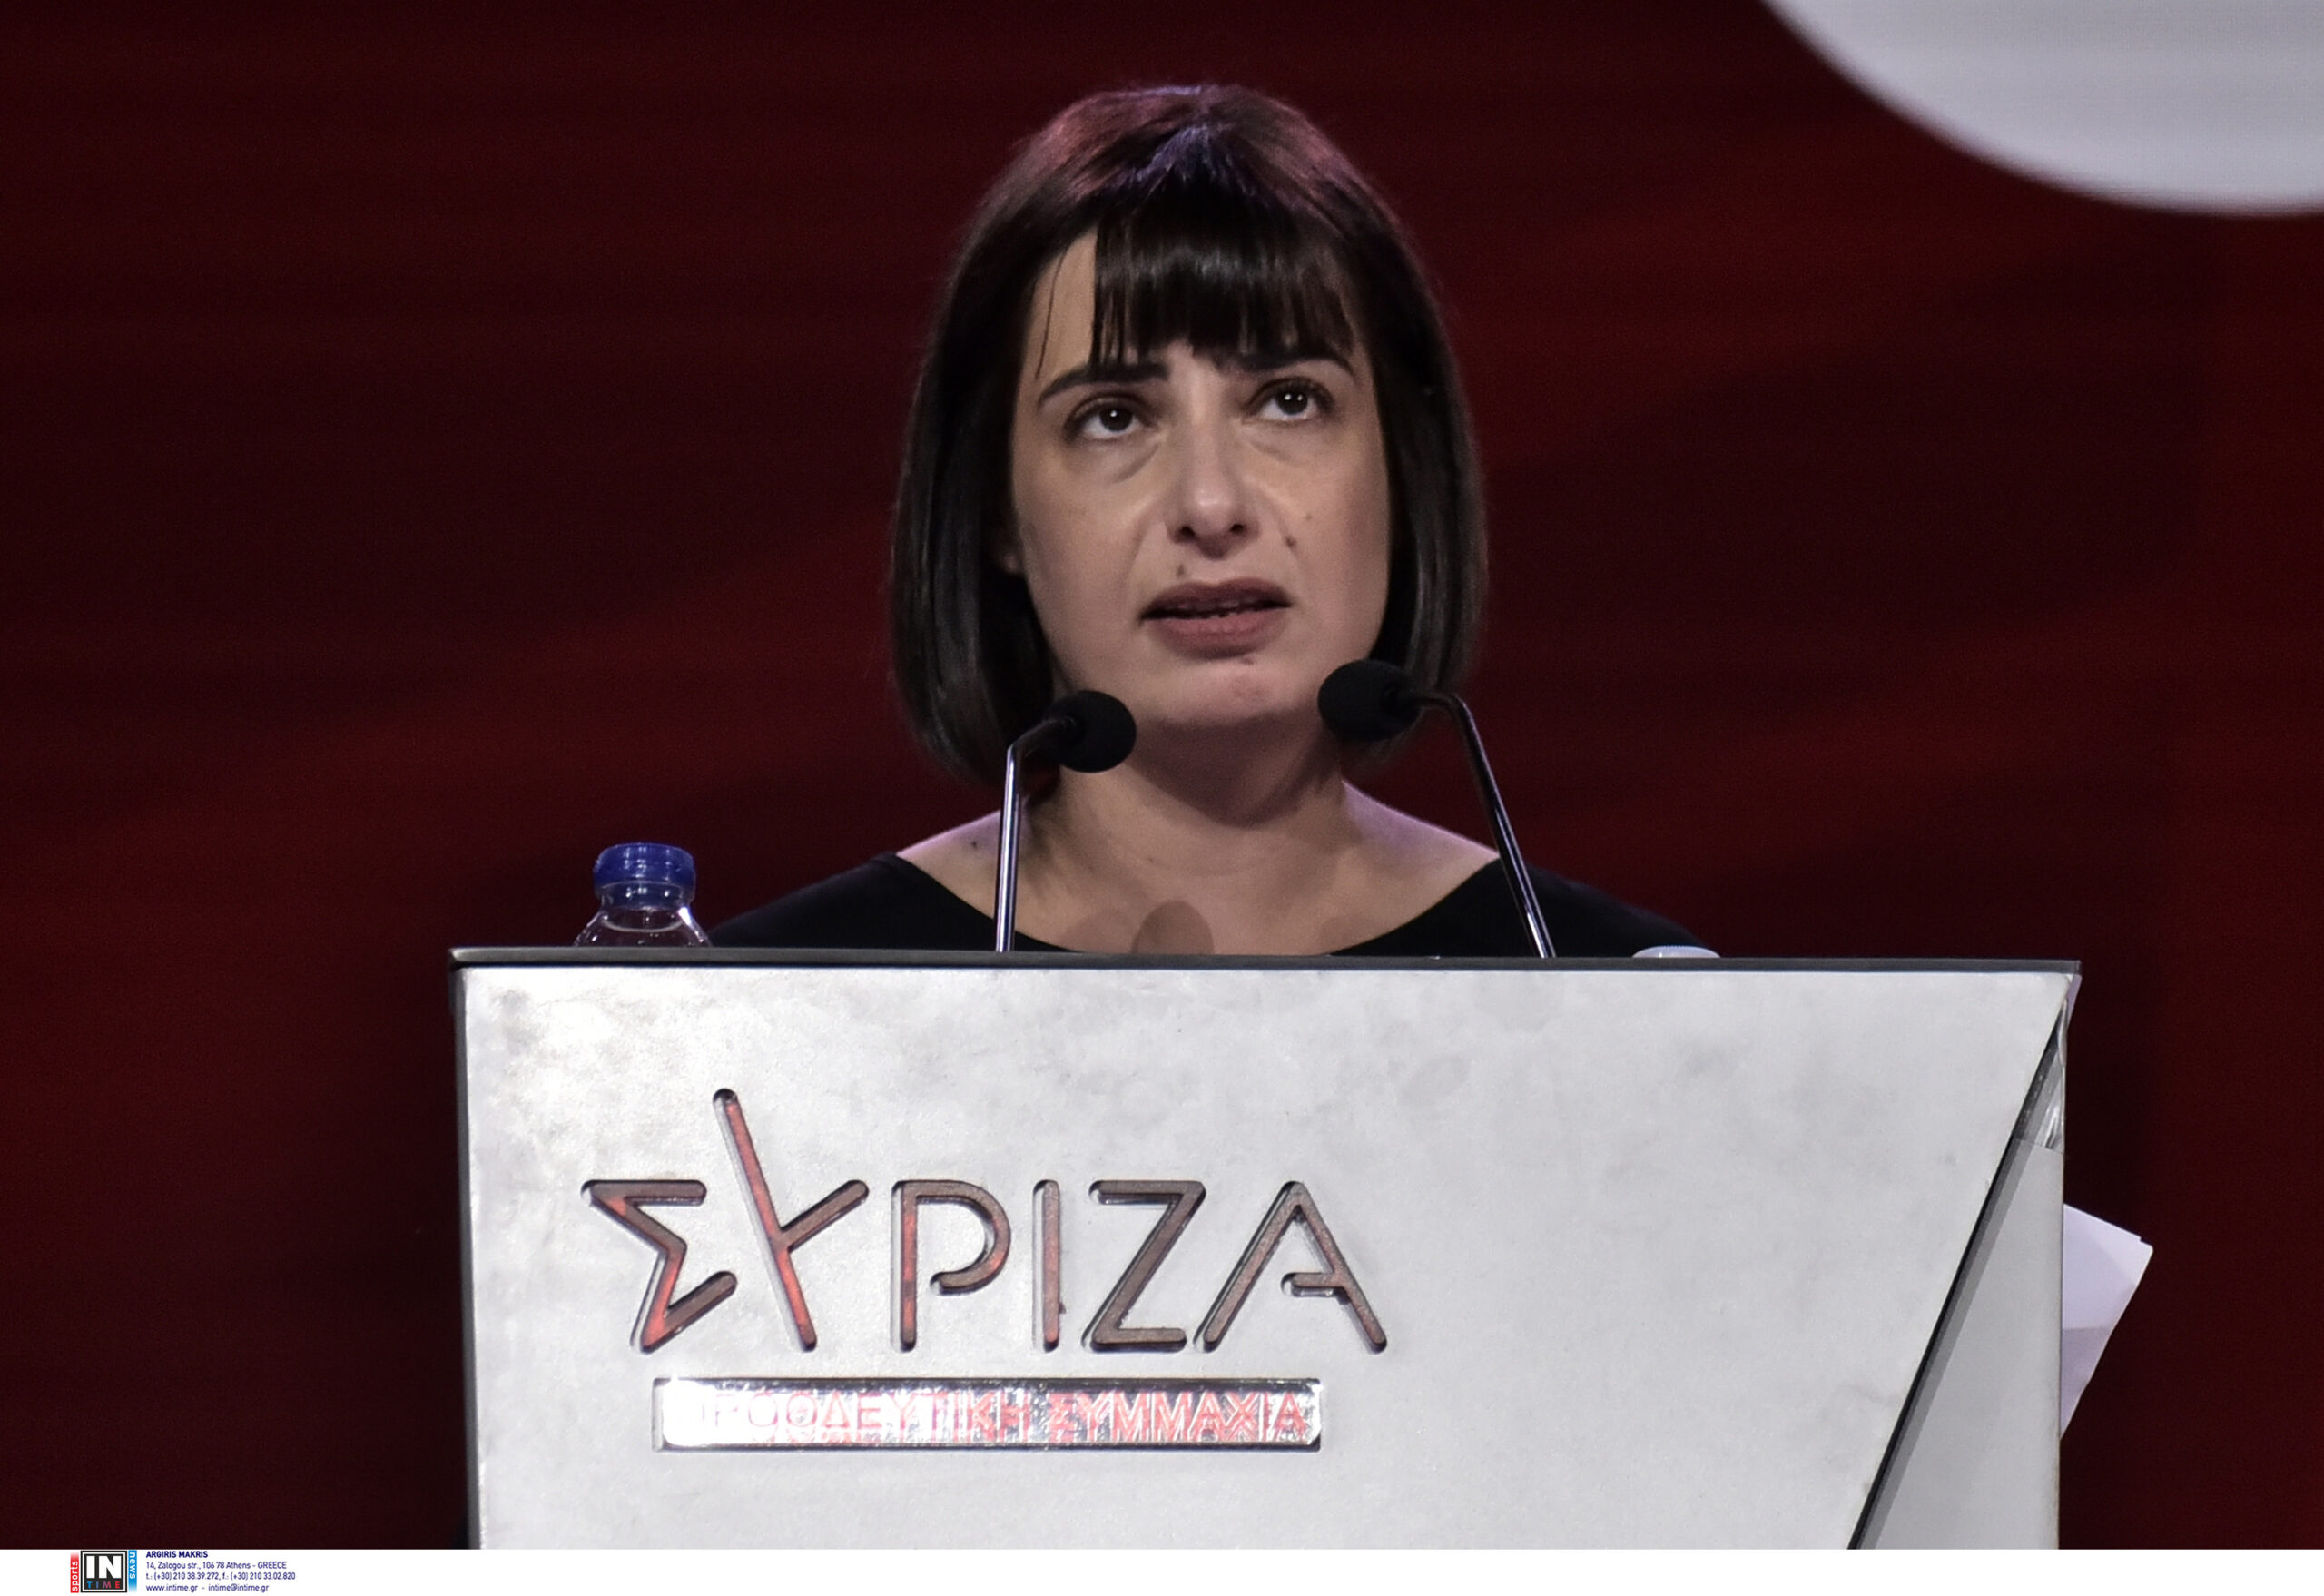 Ράνια Σβίγκου: Δεν μπορεί να αγνοηθεί από κανέναν η παρέμβαση Τσίπρα